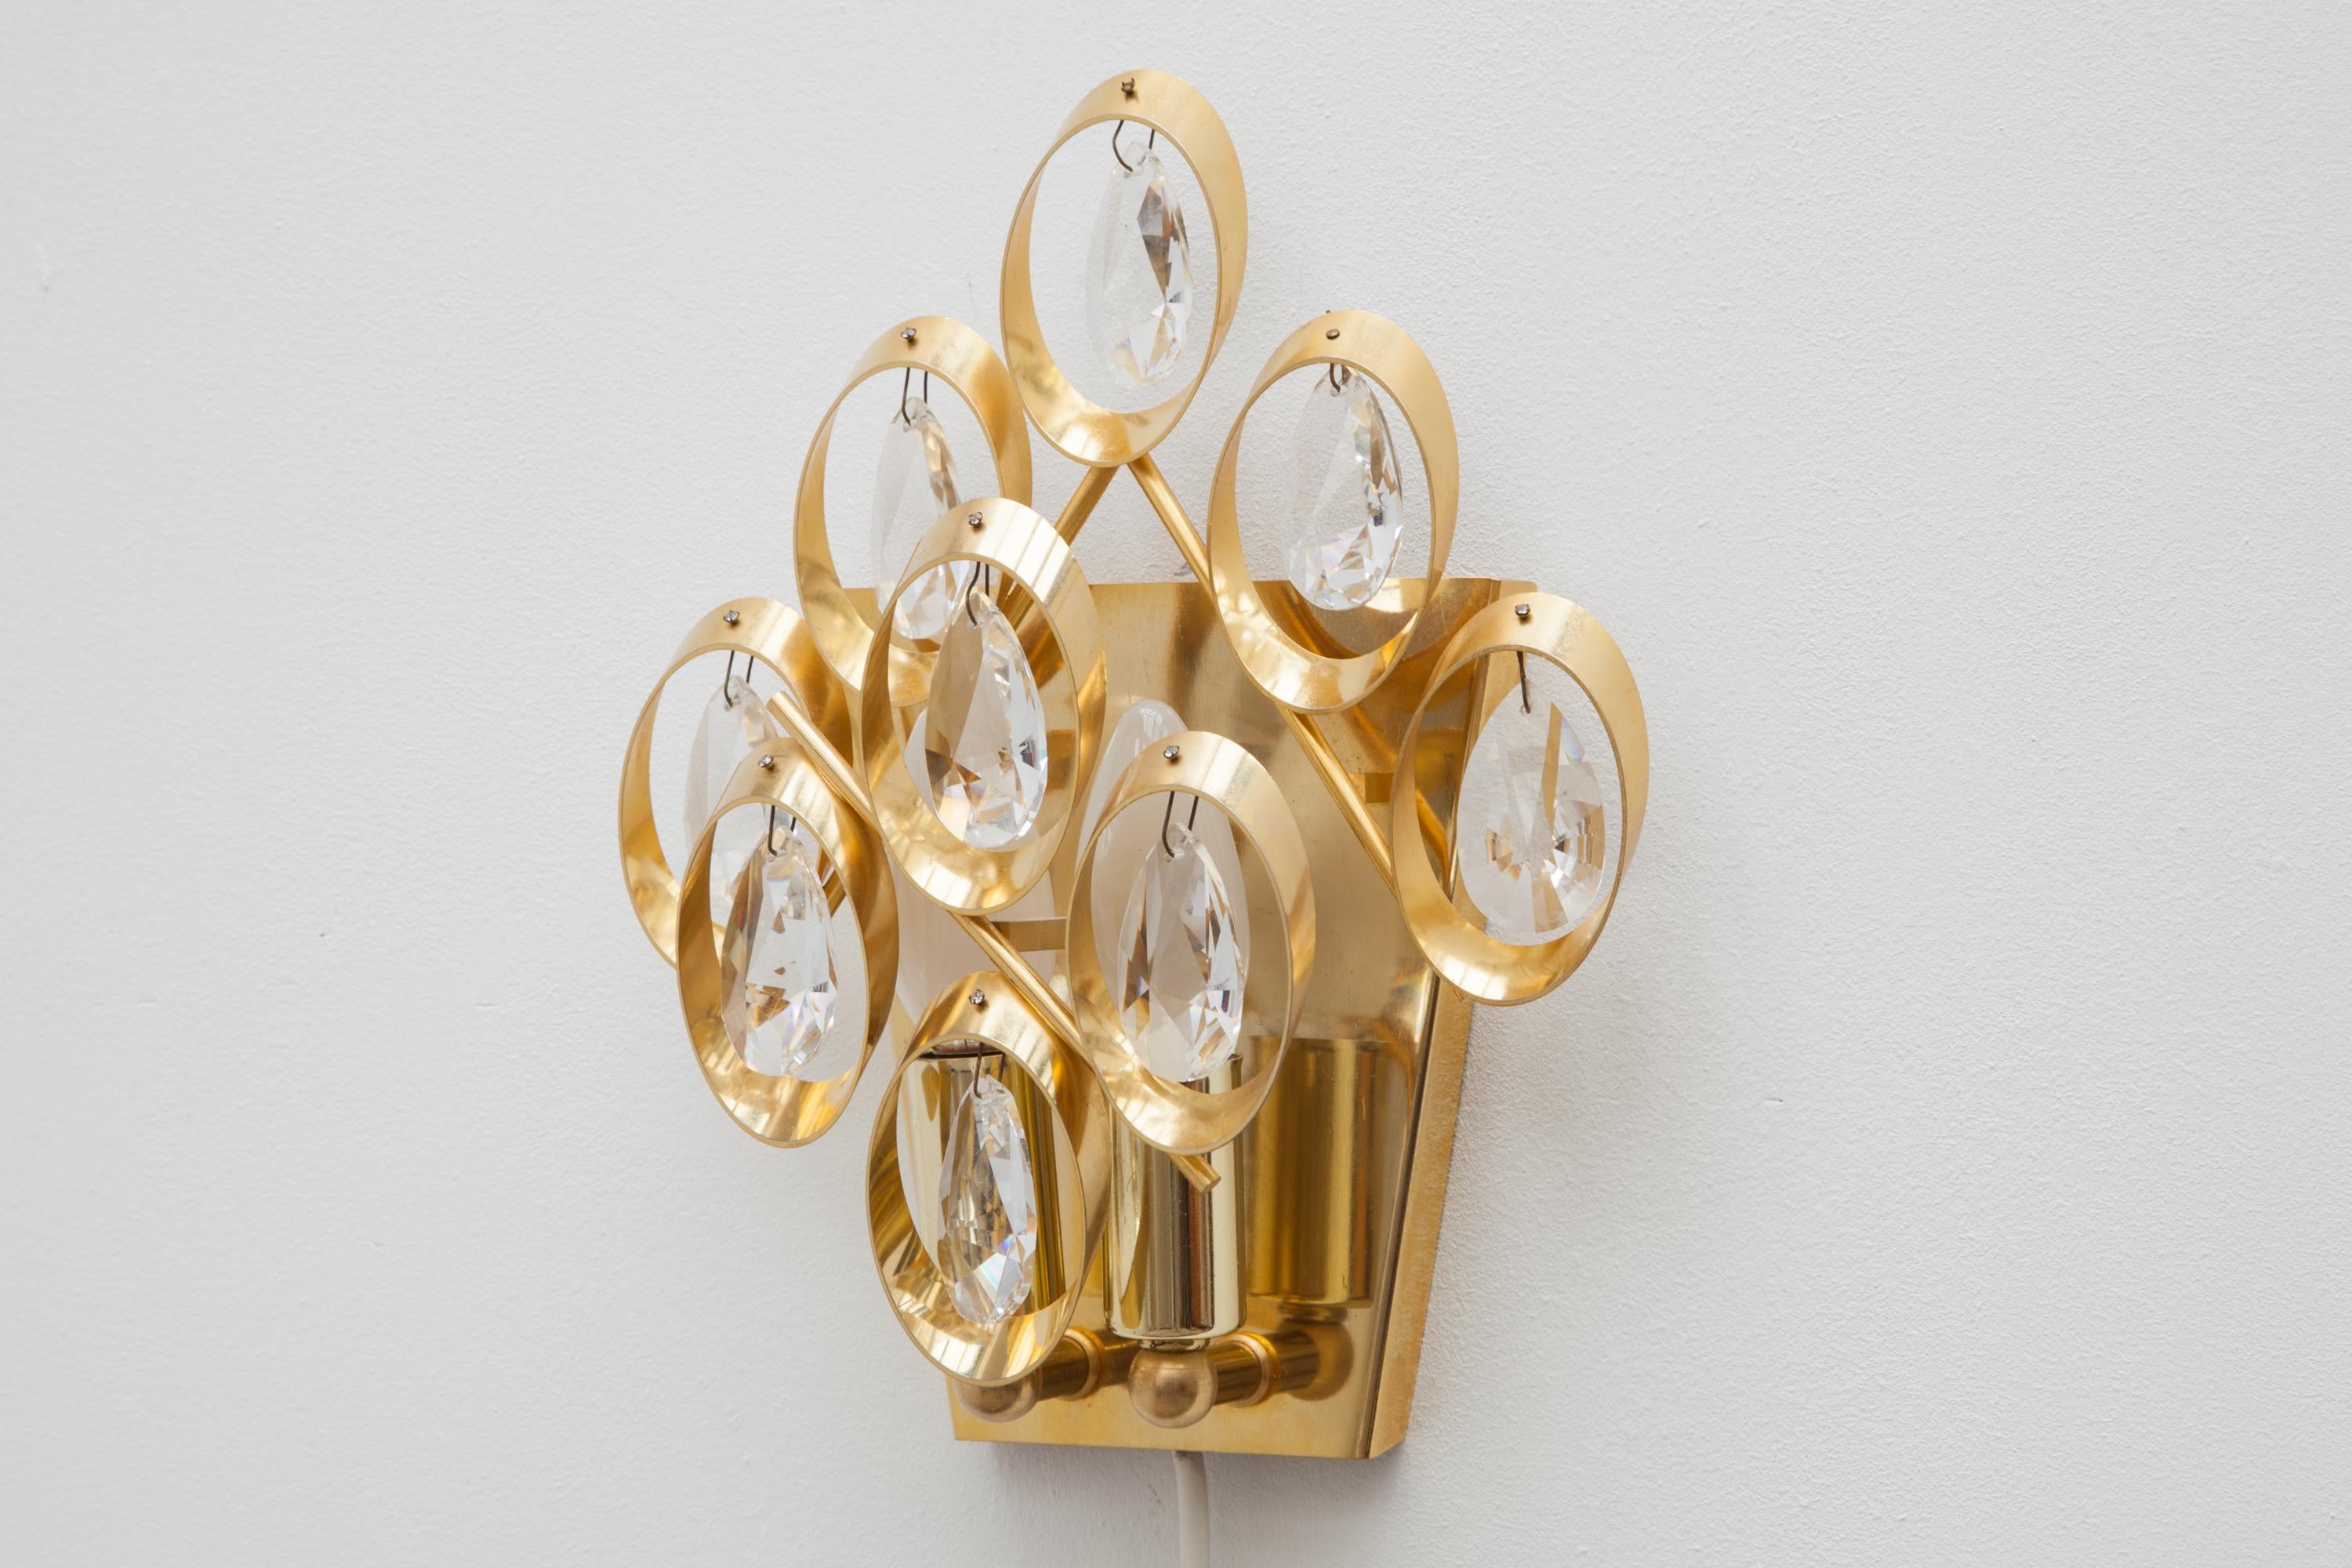 Satz von zwei Wandleuchten aus den 1960er Jahren von Palme und Walter, Deutschland.
Acht Kristalltropfen aus Glas auf einem Rahmen aus Messing, vergoldete Kreise.
Beleuchtet von zwei Glühbirnen.23,5 B x 28 H x 10 T cm.